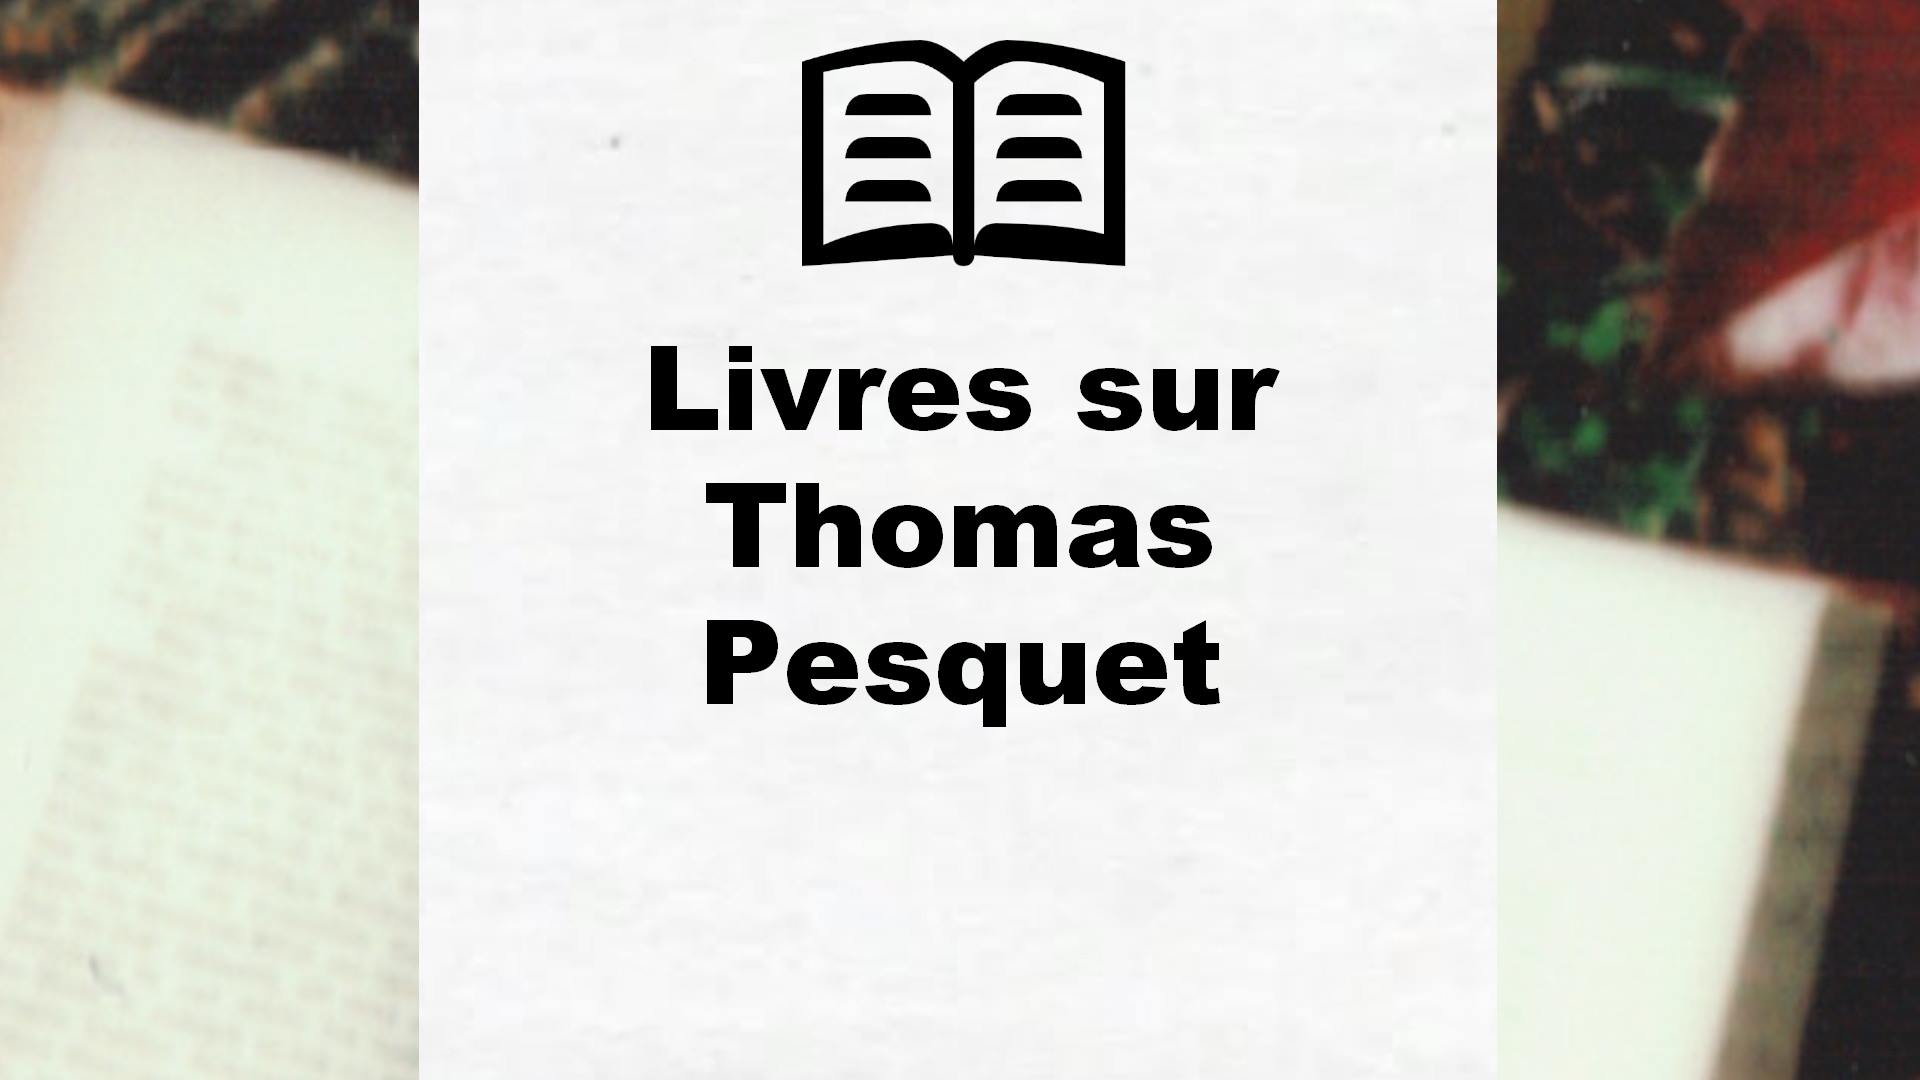 Livres sur Thomas Pesquet